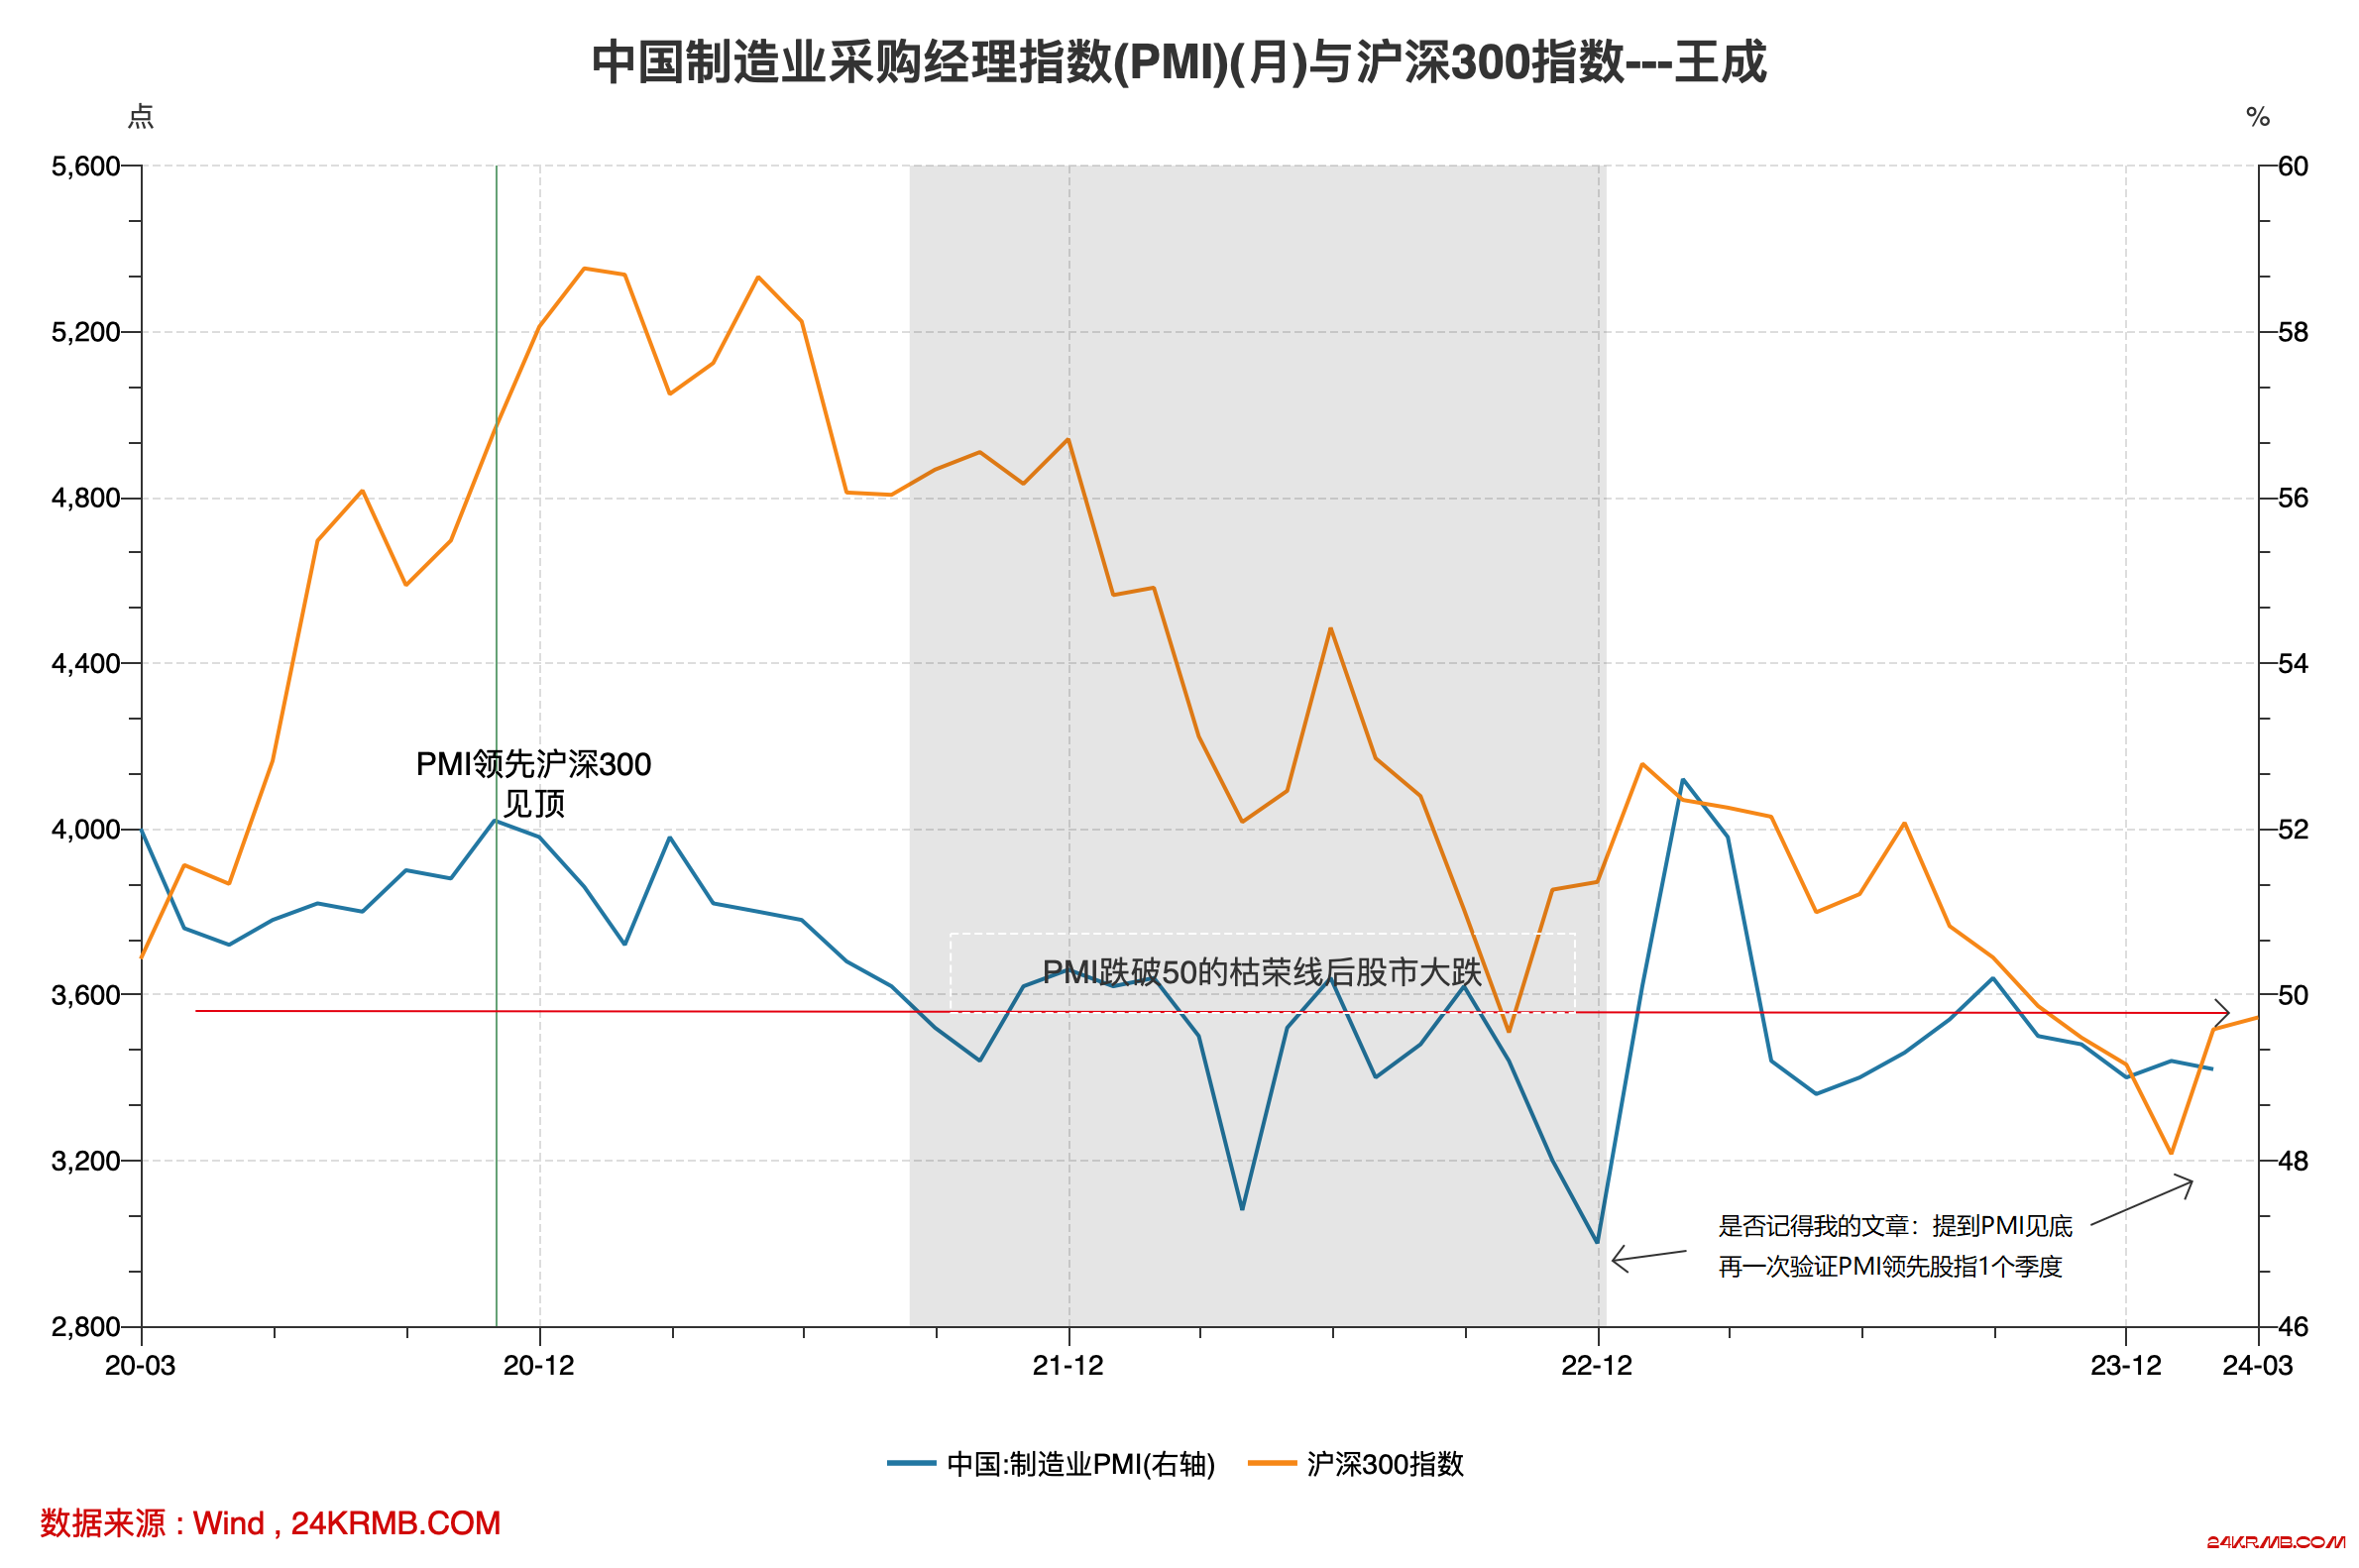 中国制造业采购经理指数(PMI)(月)与沪深300指数---王成.png